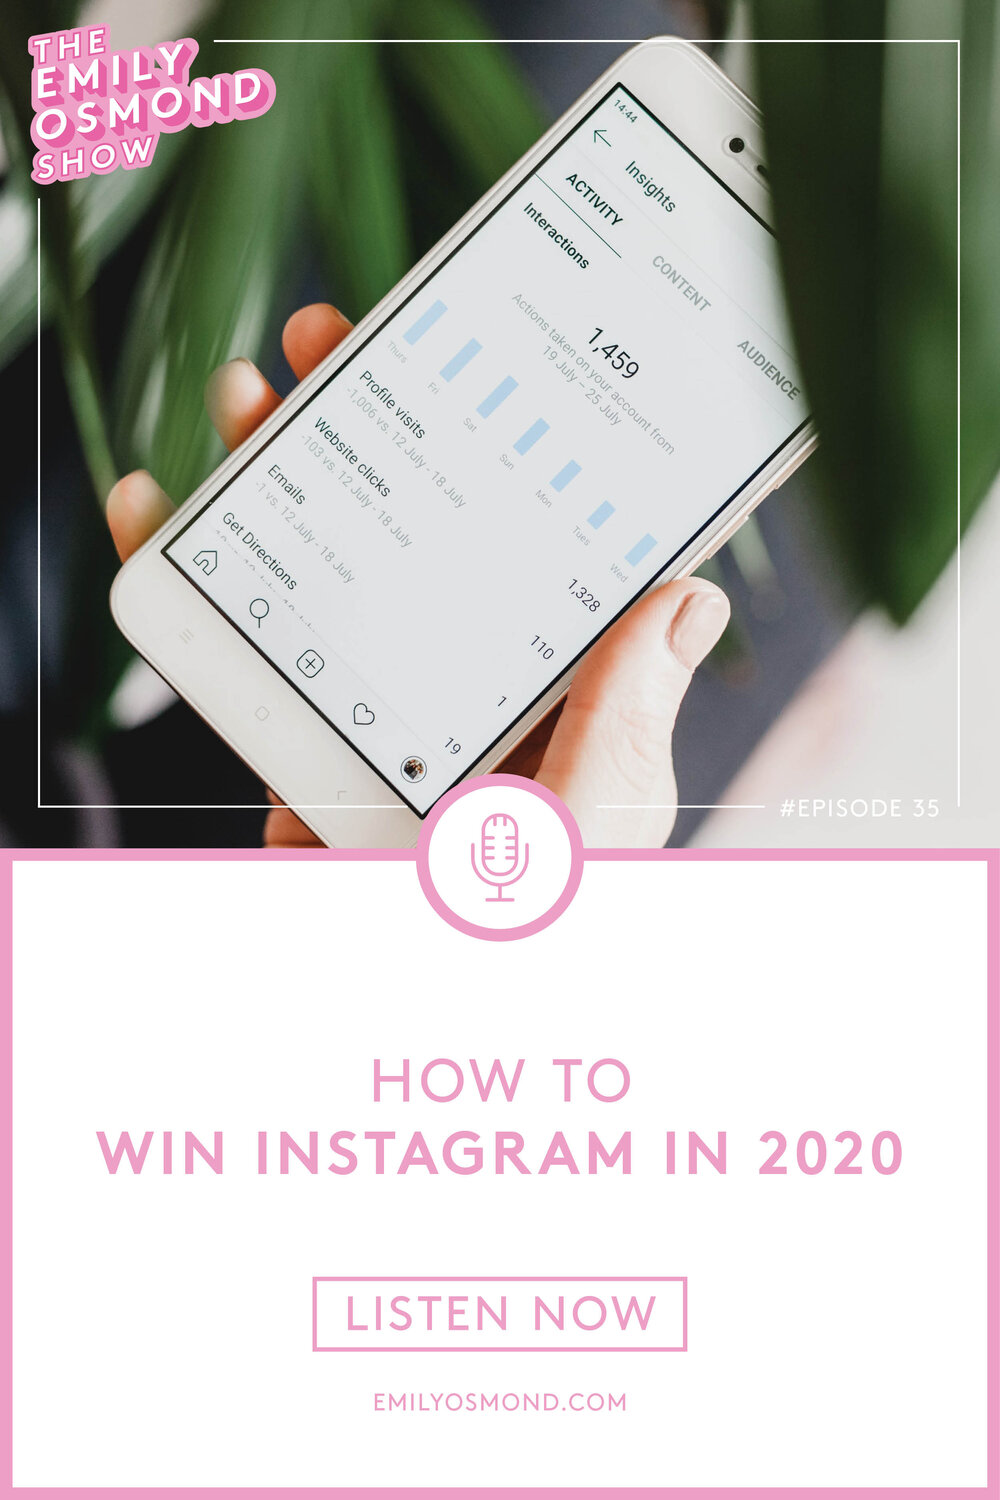 Emily Osmond Show_Episode_Pinterest_35_How to win Instagram.jpg